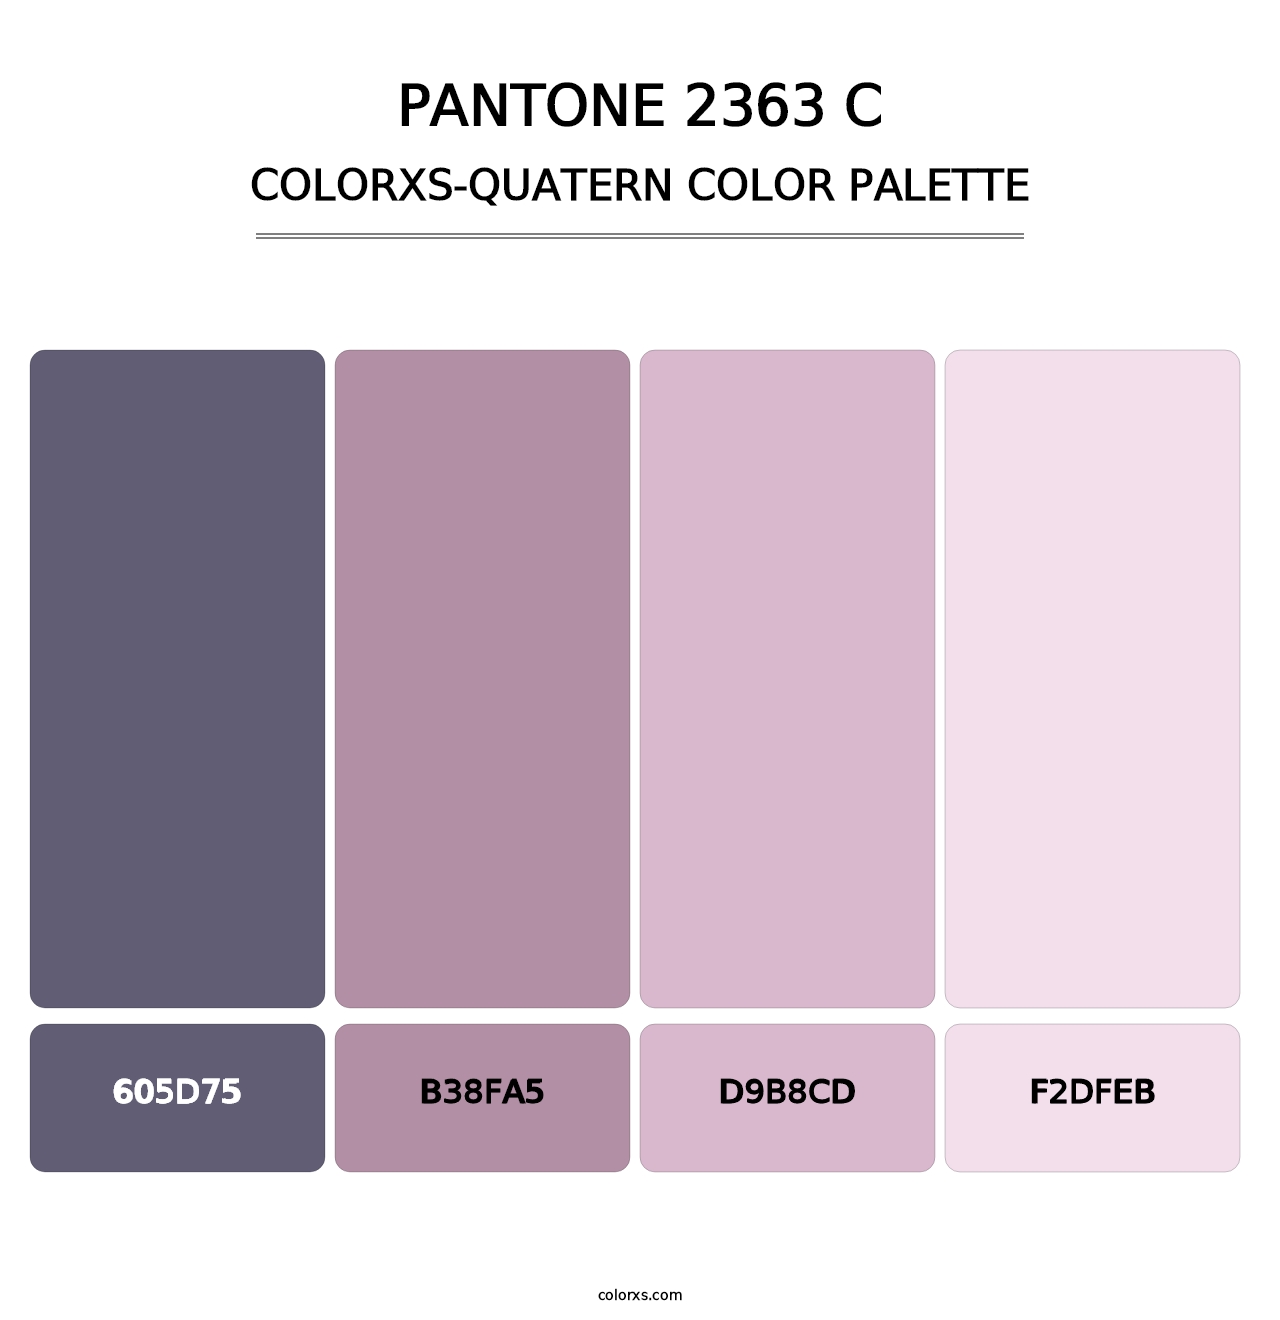 PANTONE 2363 C - Colorxs Quatern Palette